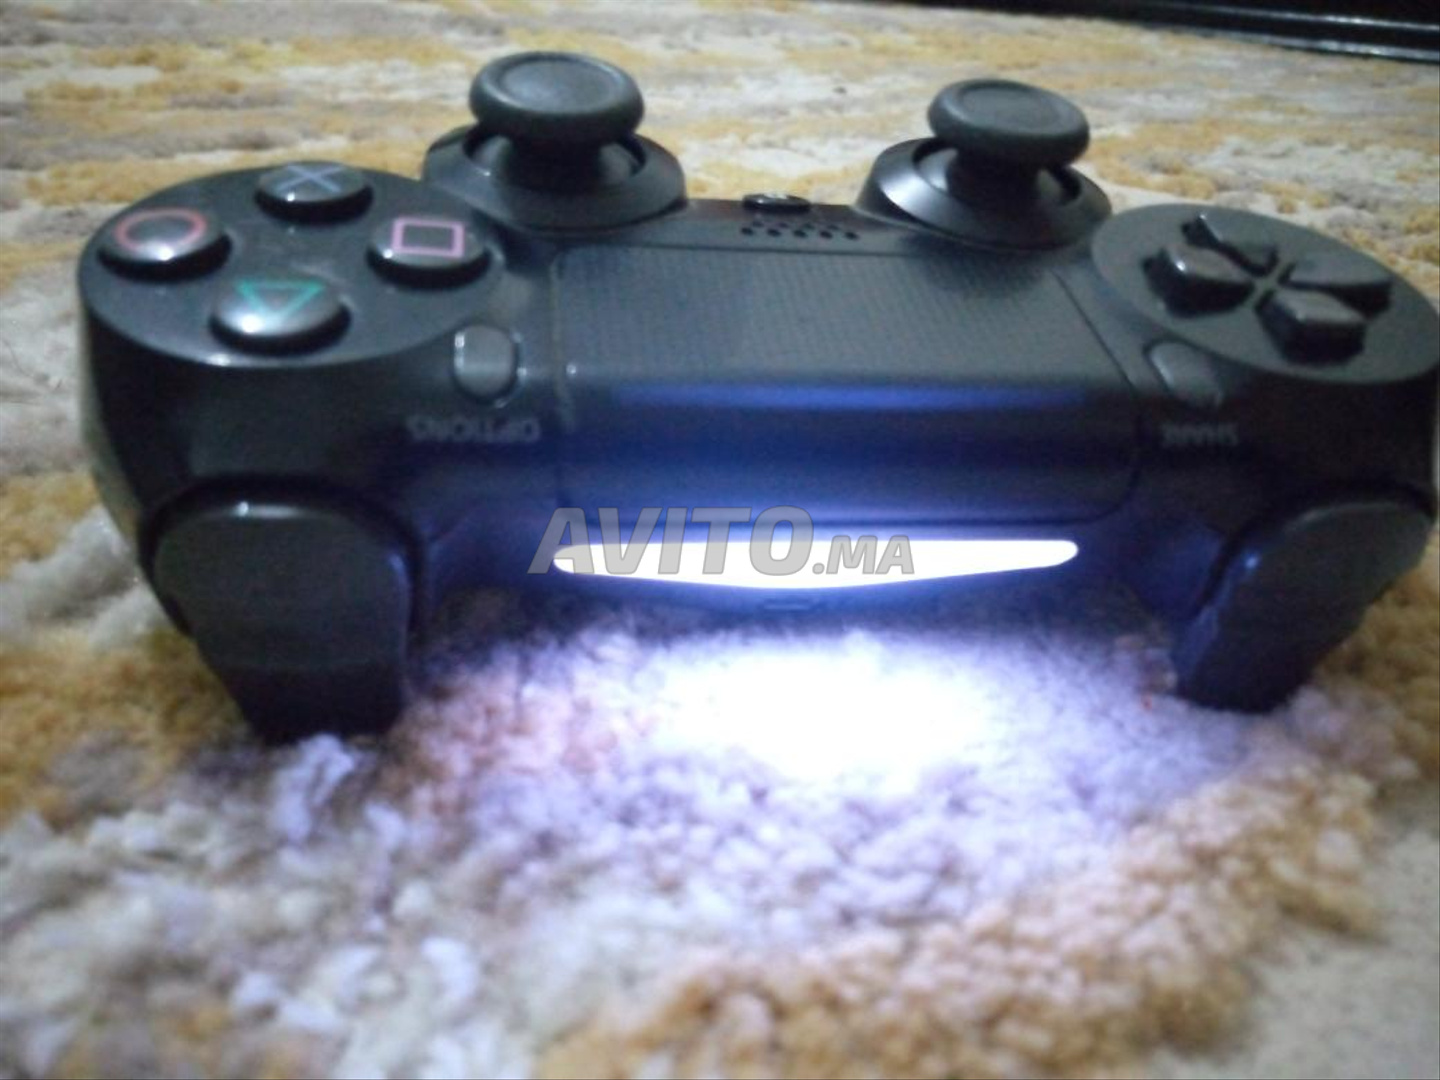 PlayStation 4 slim 500 gb - 6